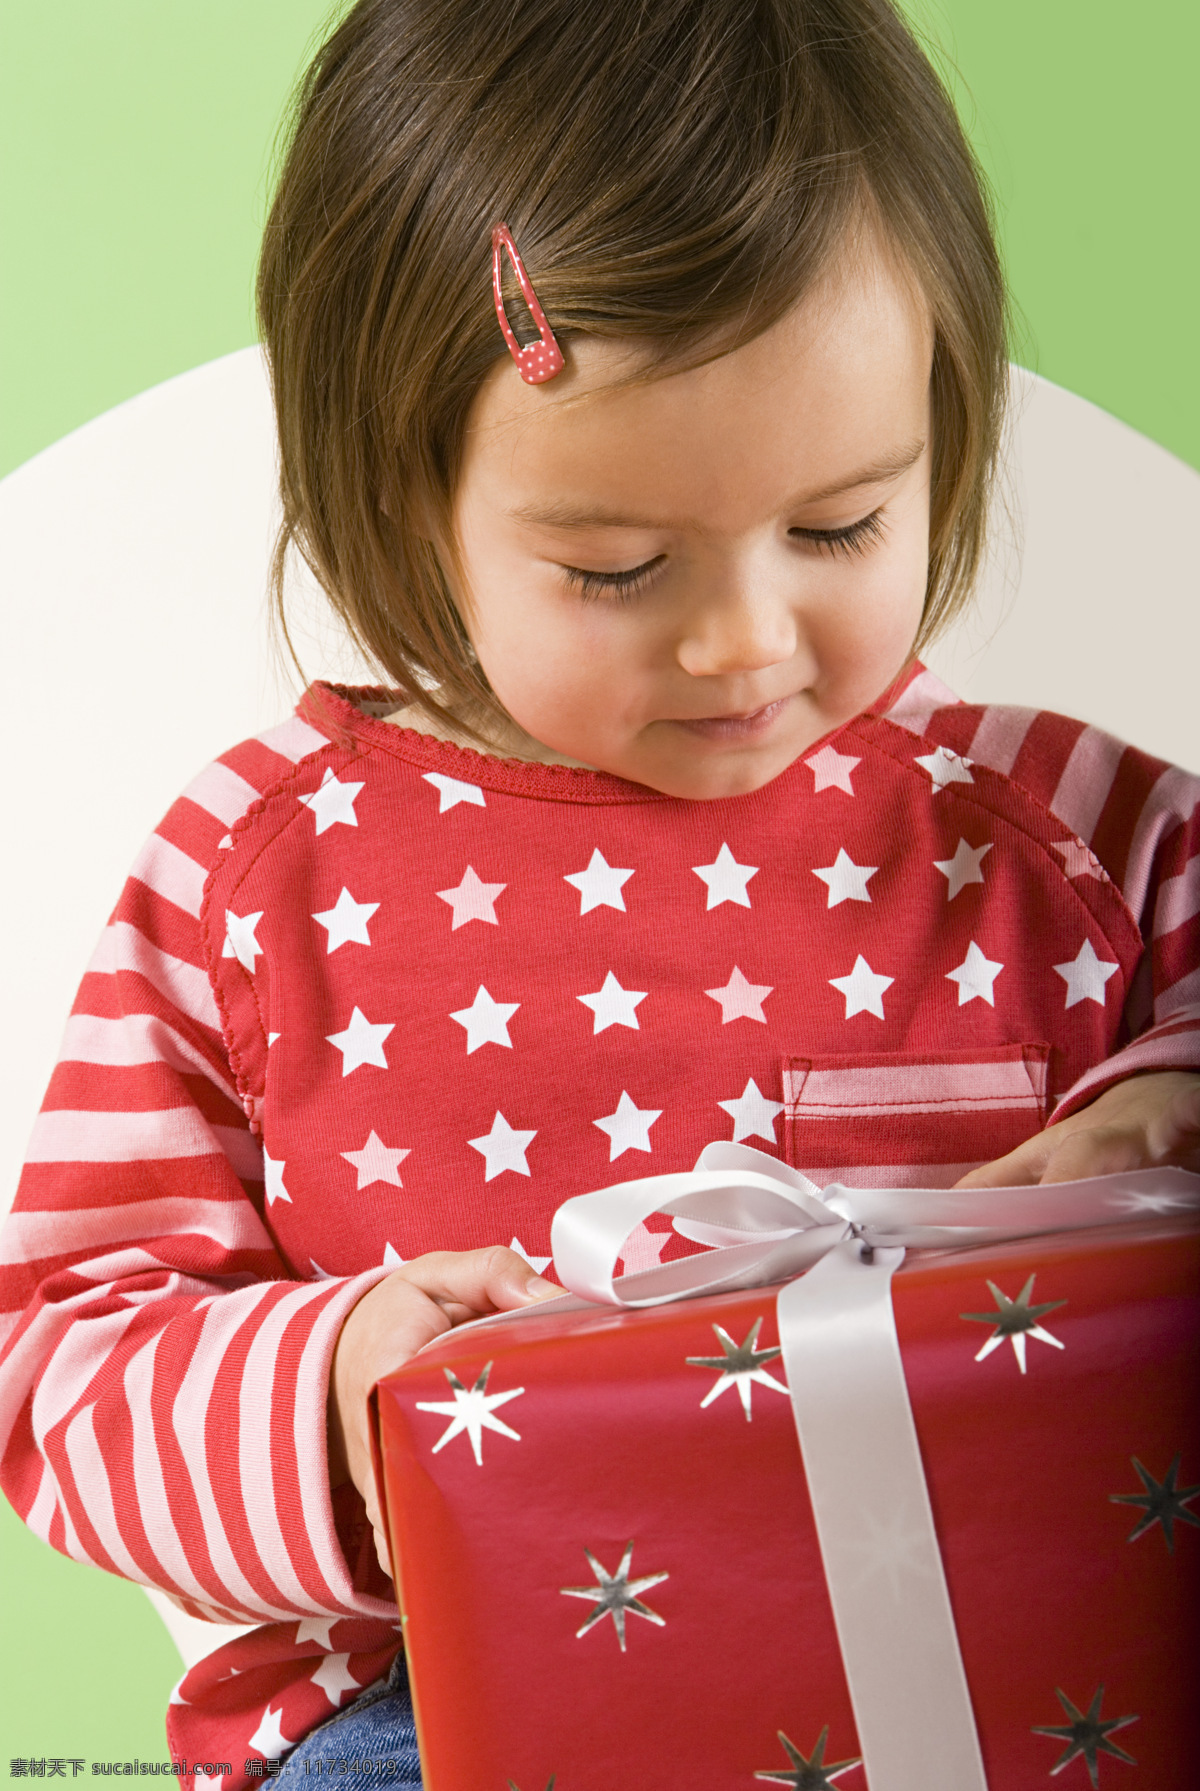 抱 礼包 可爱 女孩 孩子的圣诞节 外国儿童 孩子 小孩 圣诞节 小女孩 礼物 节日庆典 生活百科